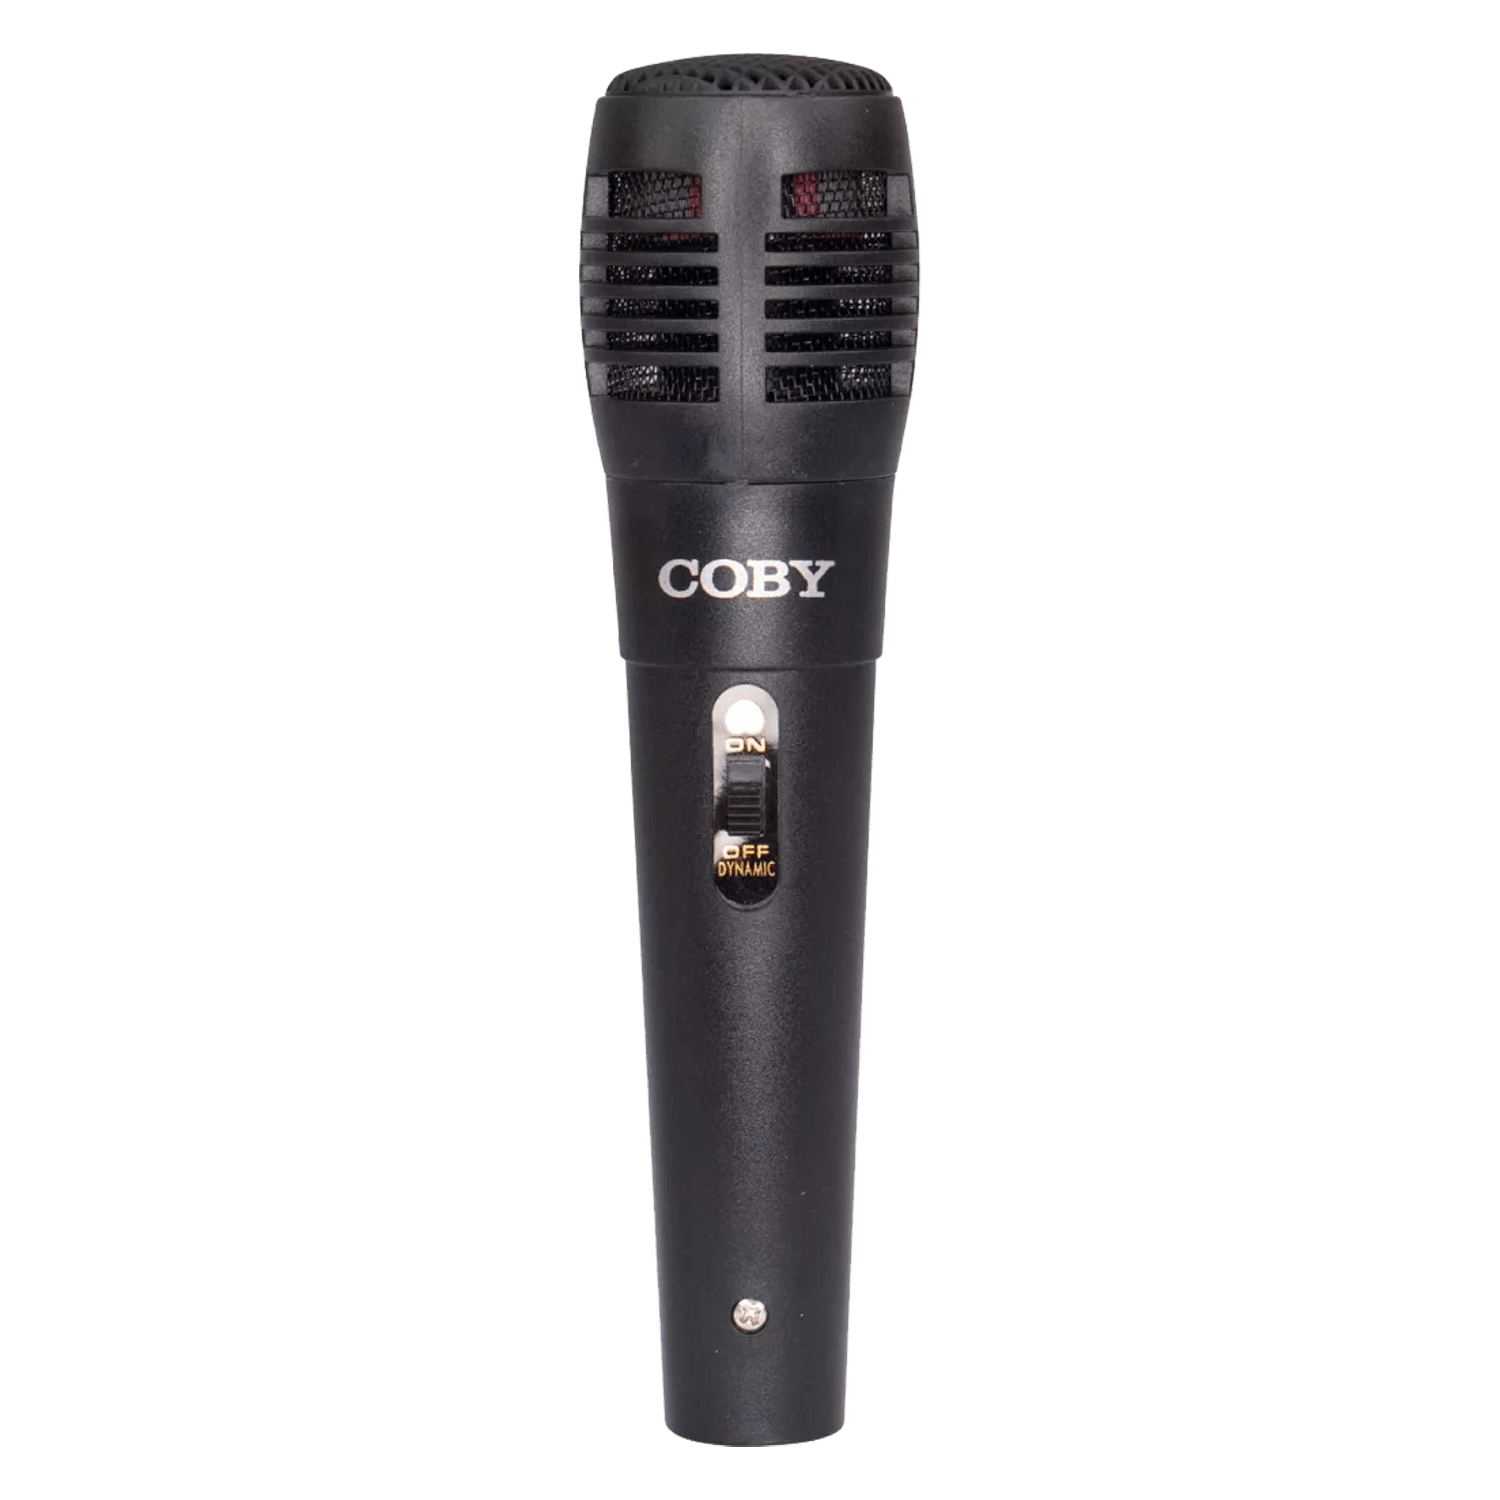 Caixa de Som Coby CY3362-260 Com Microfone / USB / Bluetooth / SD / FM / LED